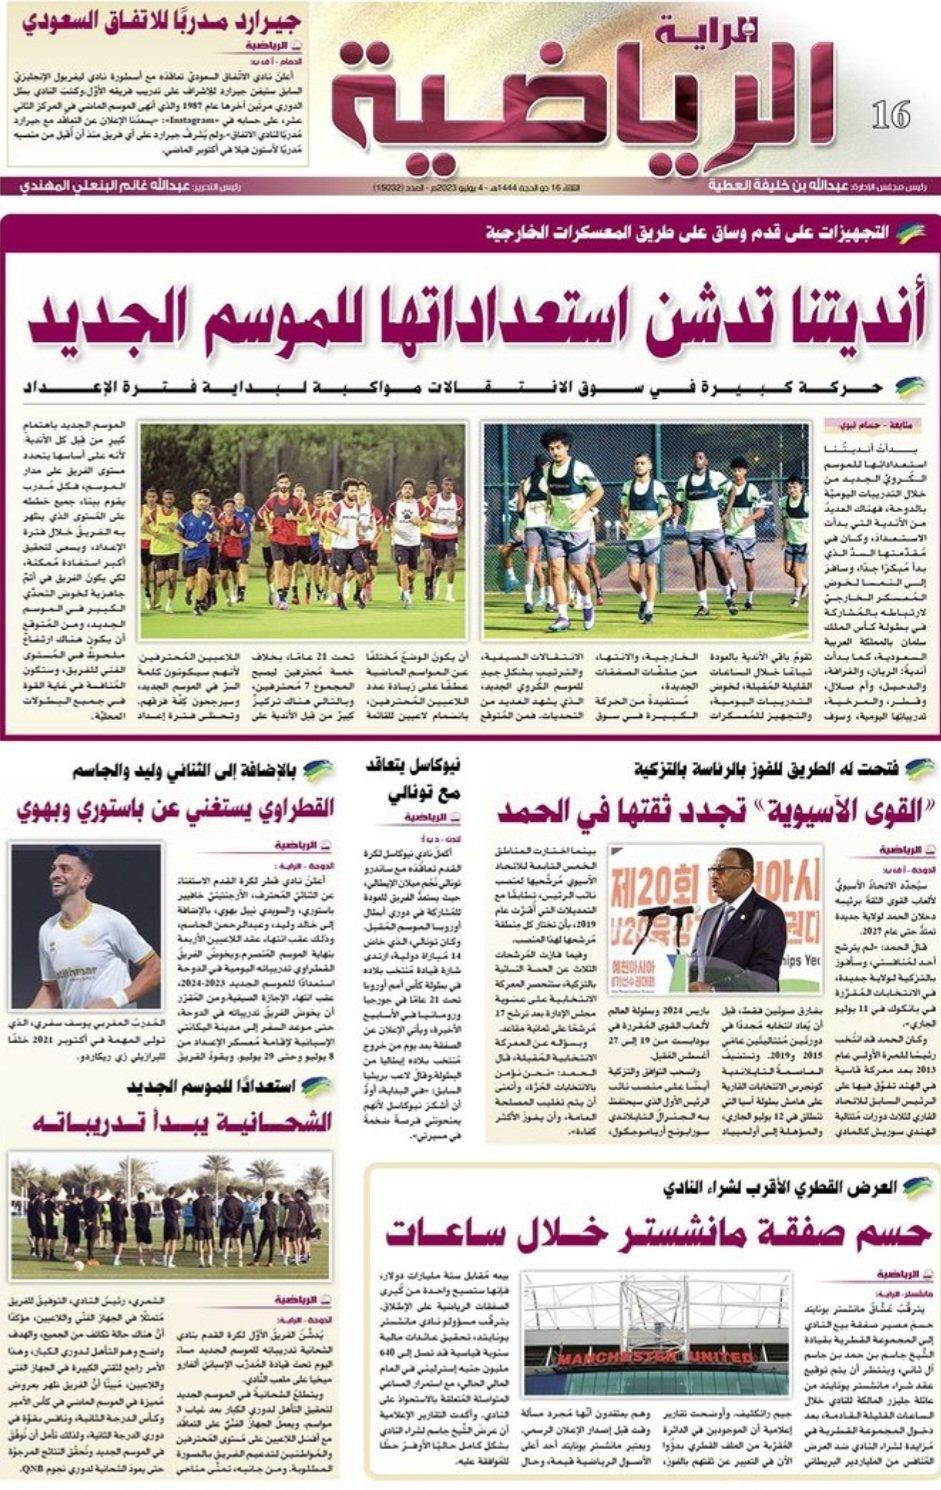 7个小时前，卡塔尔三大纸媒之一AL RAYA宣布曼联收购将在几个小时后完成。

